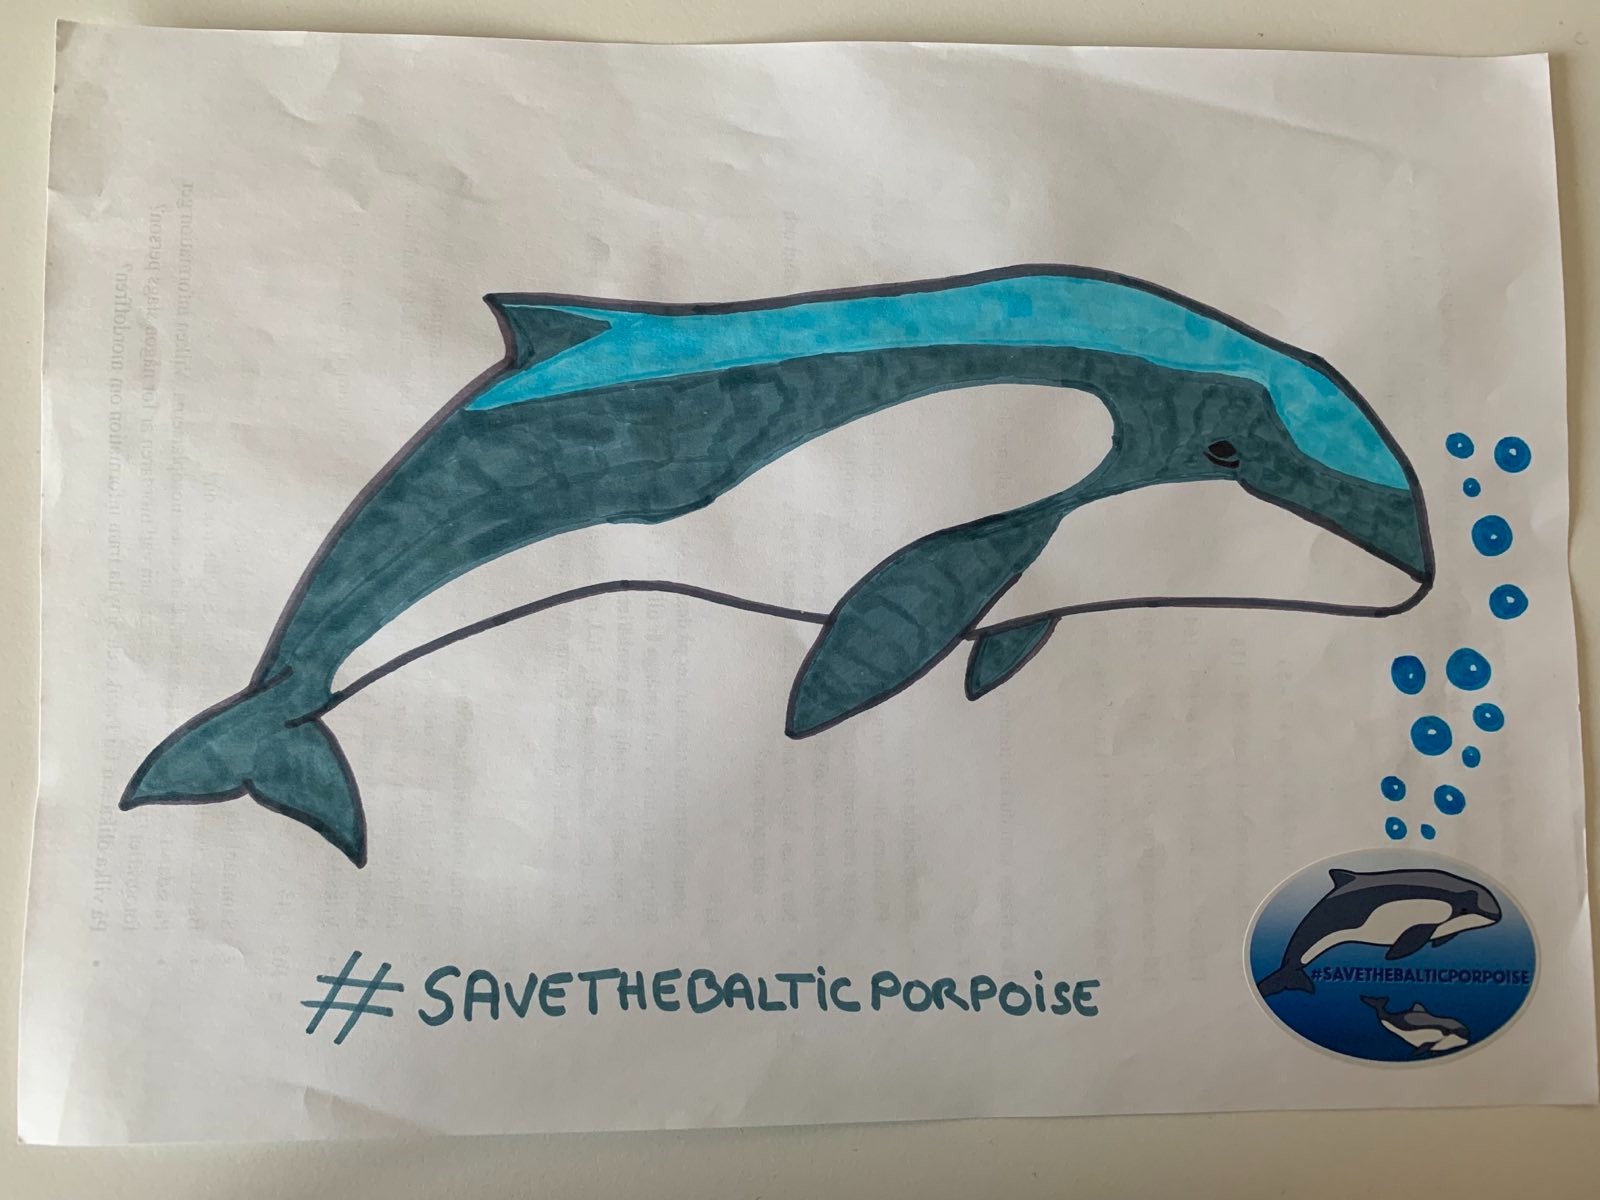 Zeichnung eines blauen Schweinswals, mit dem Hashtag #SaveTheBalticPorpoise